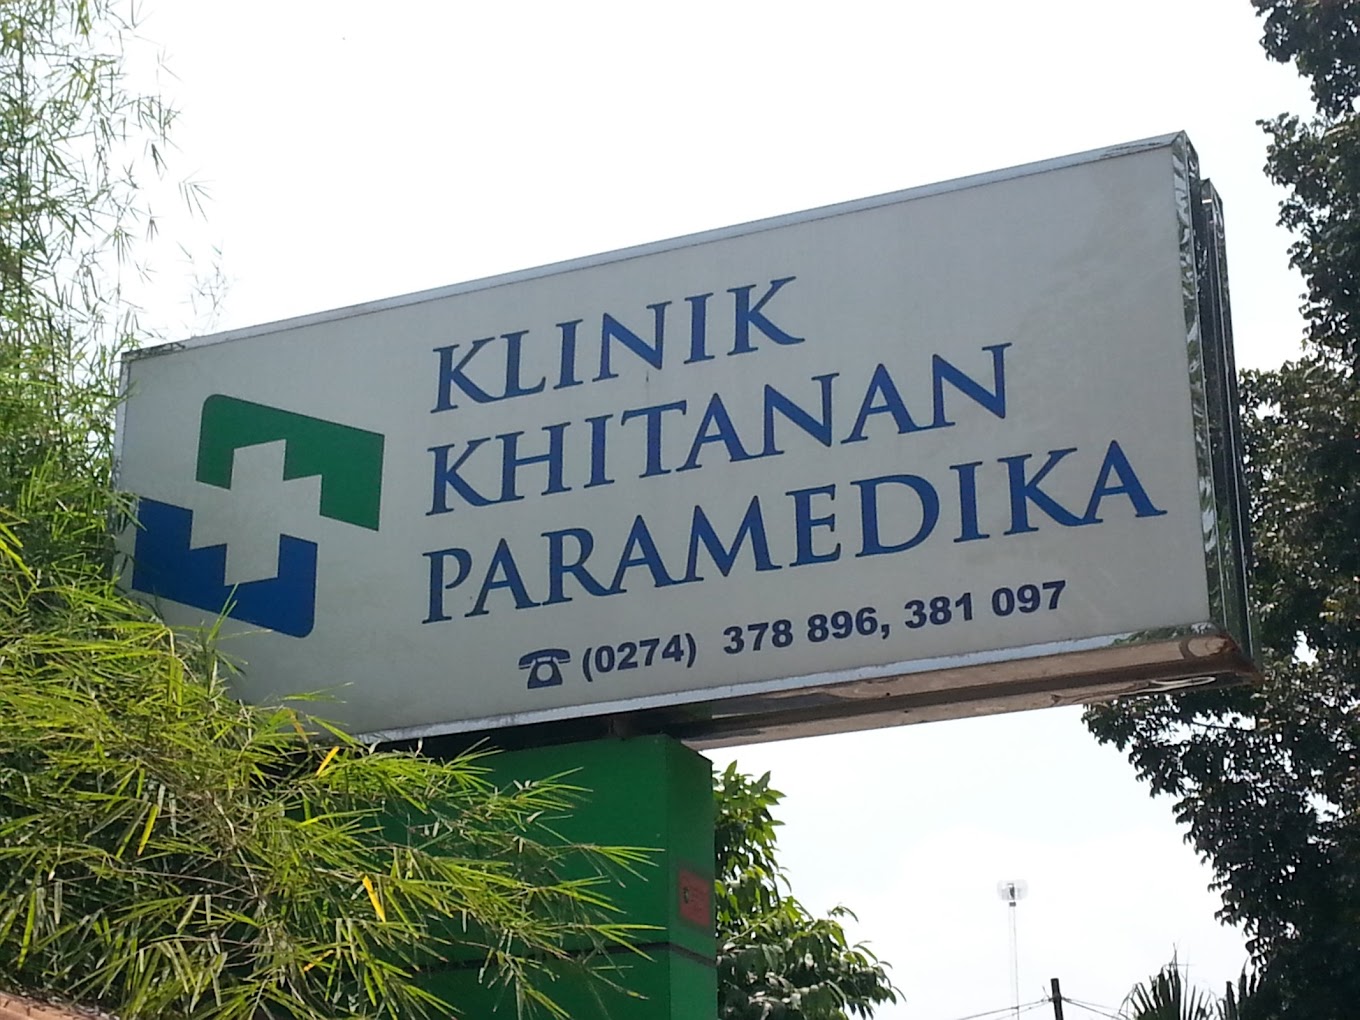 Klinik Khitanan Paramedika Yogyakarta